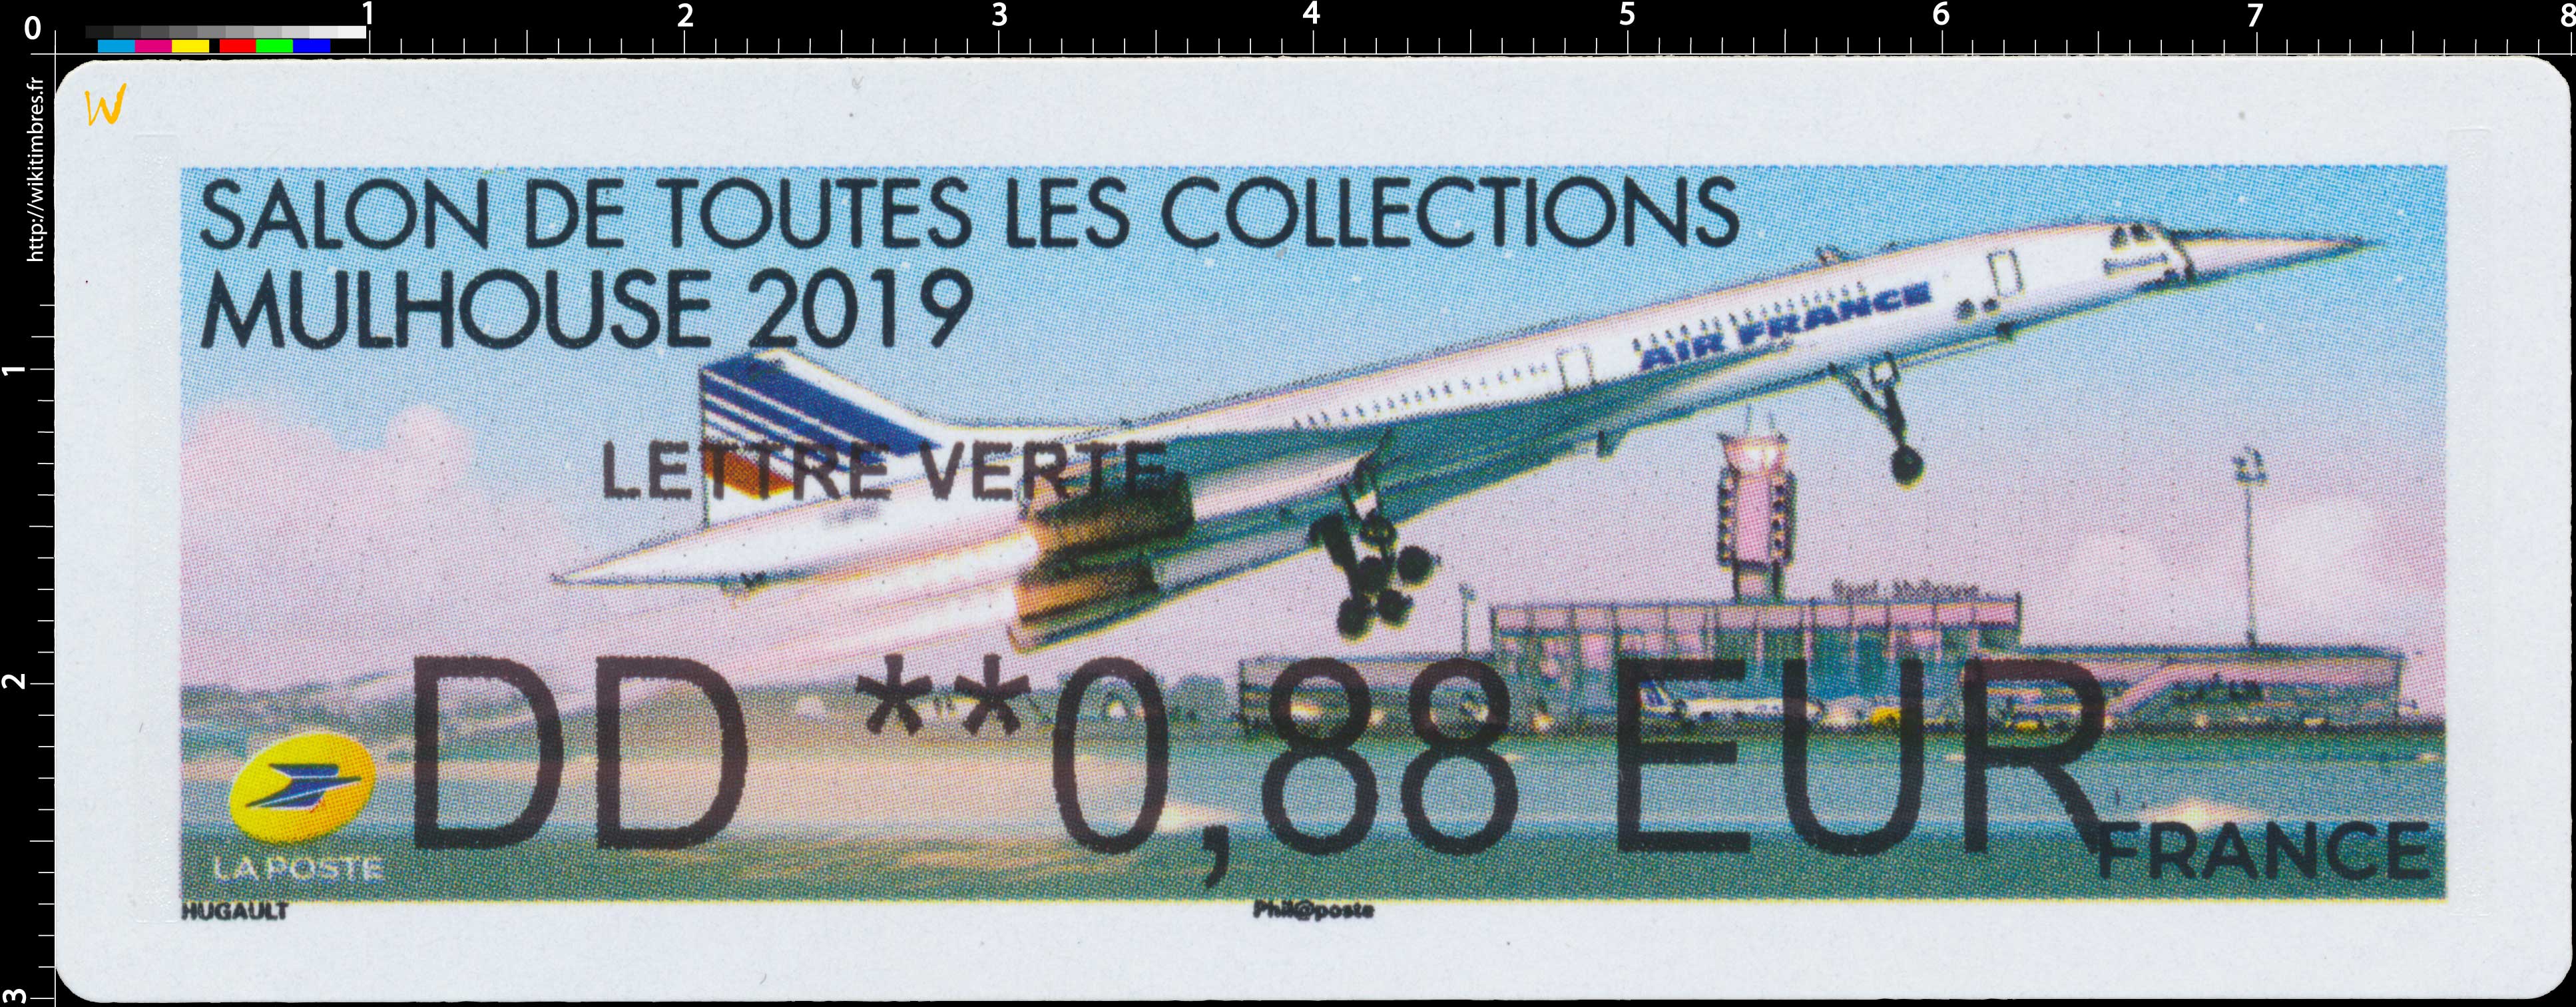 2019 Salon de toutes les collections - Mulhouse 